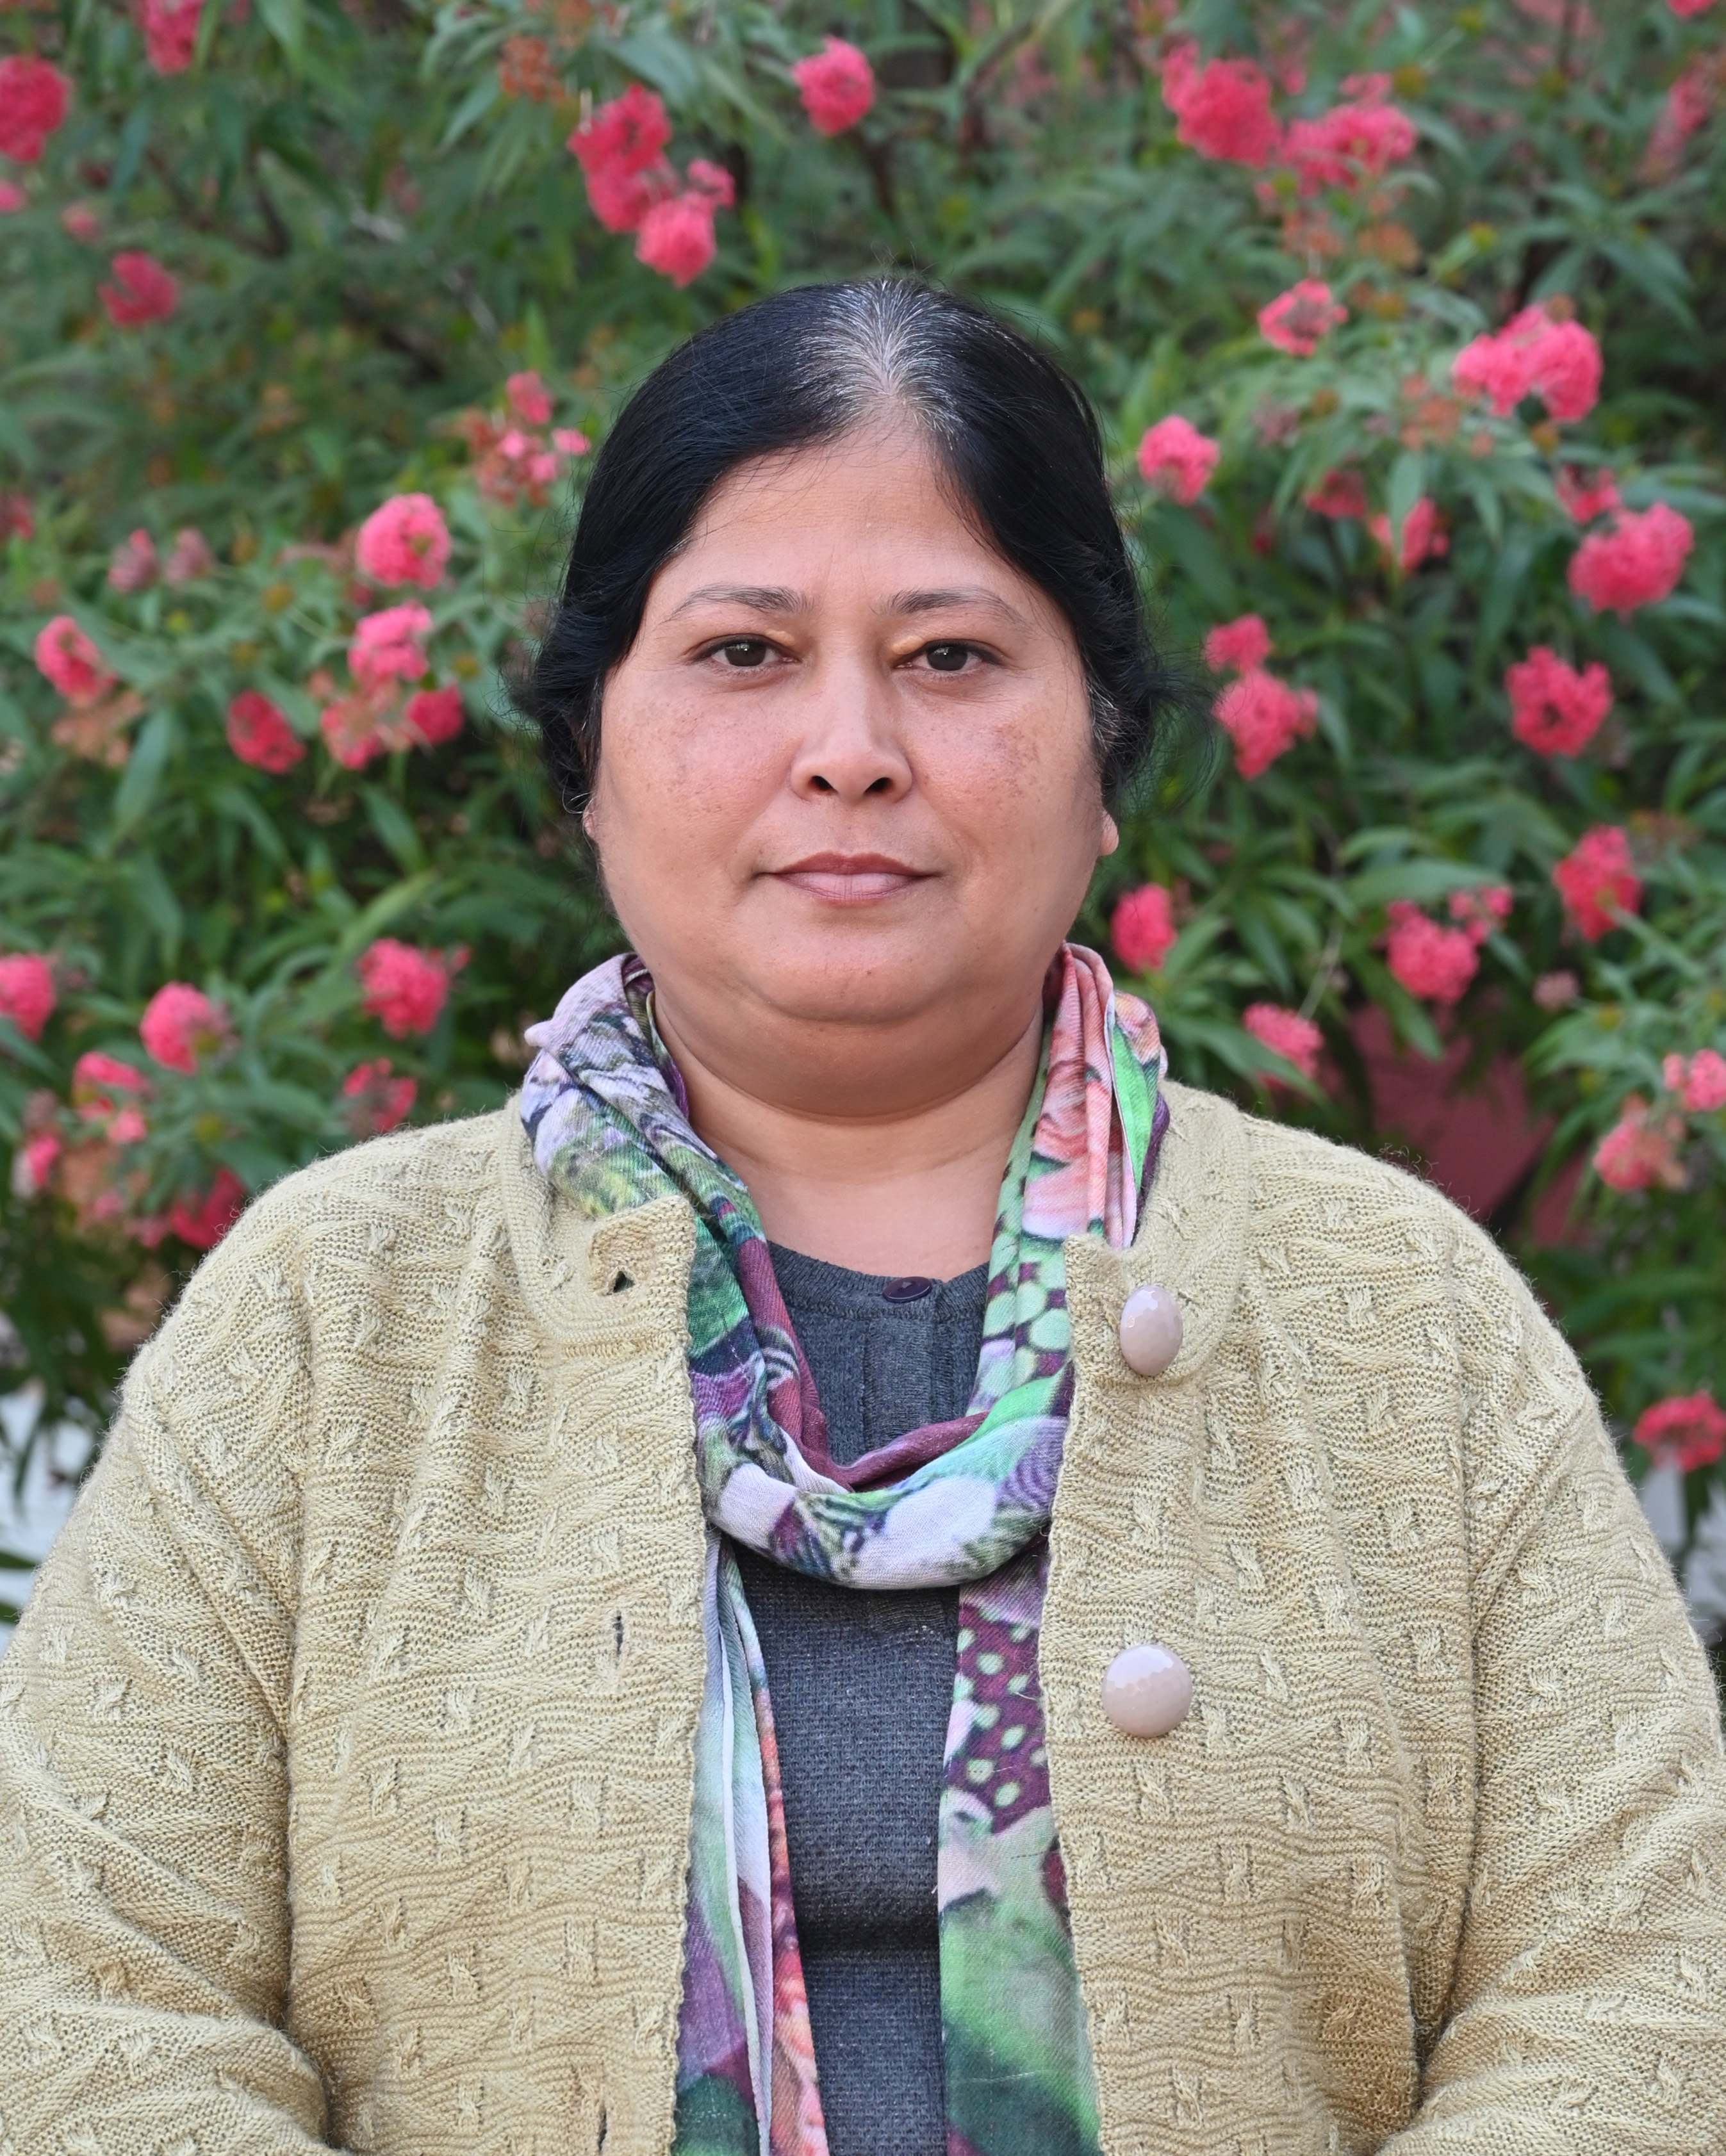 Priya Darshnee Gupta